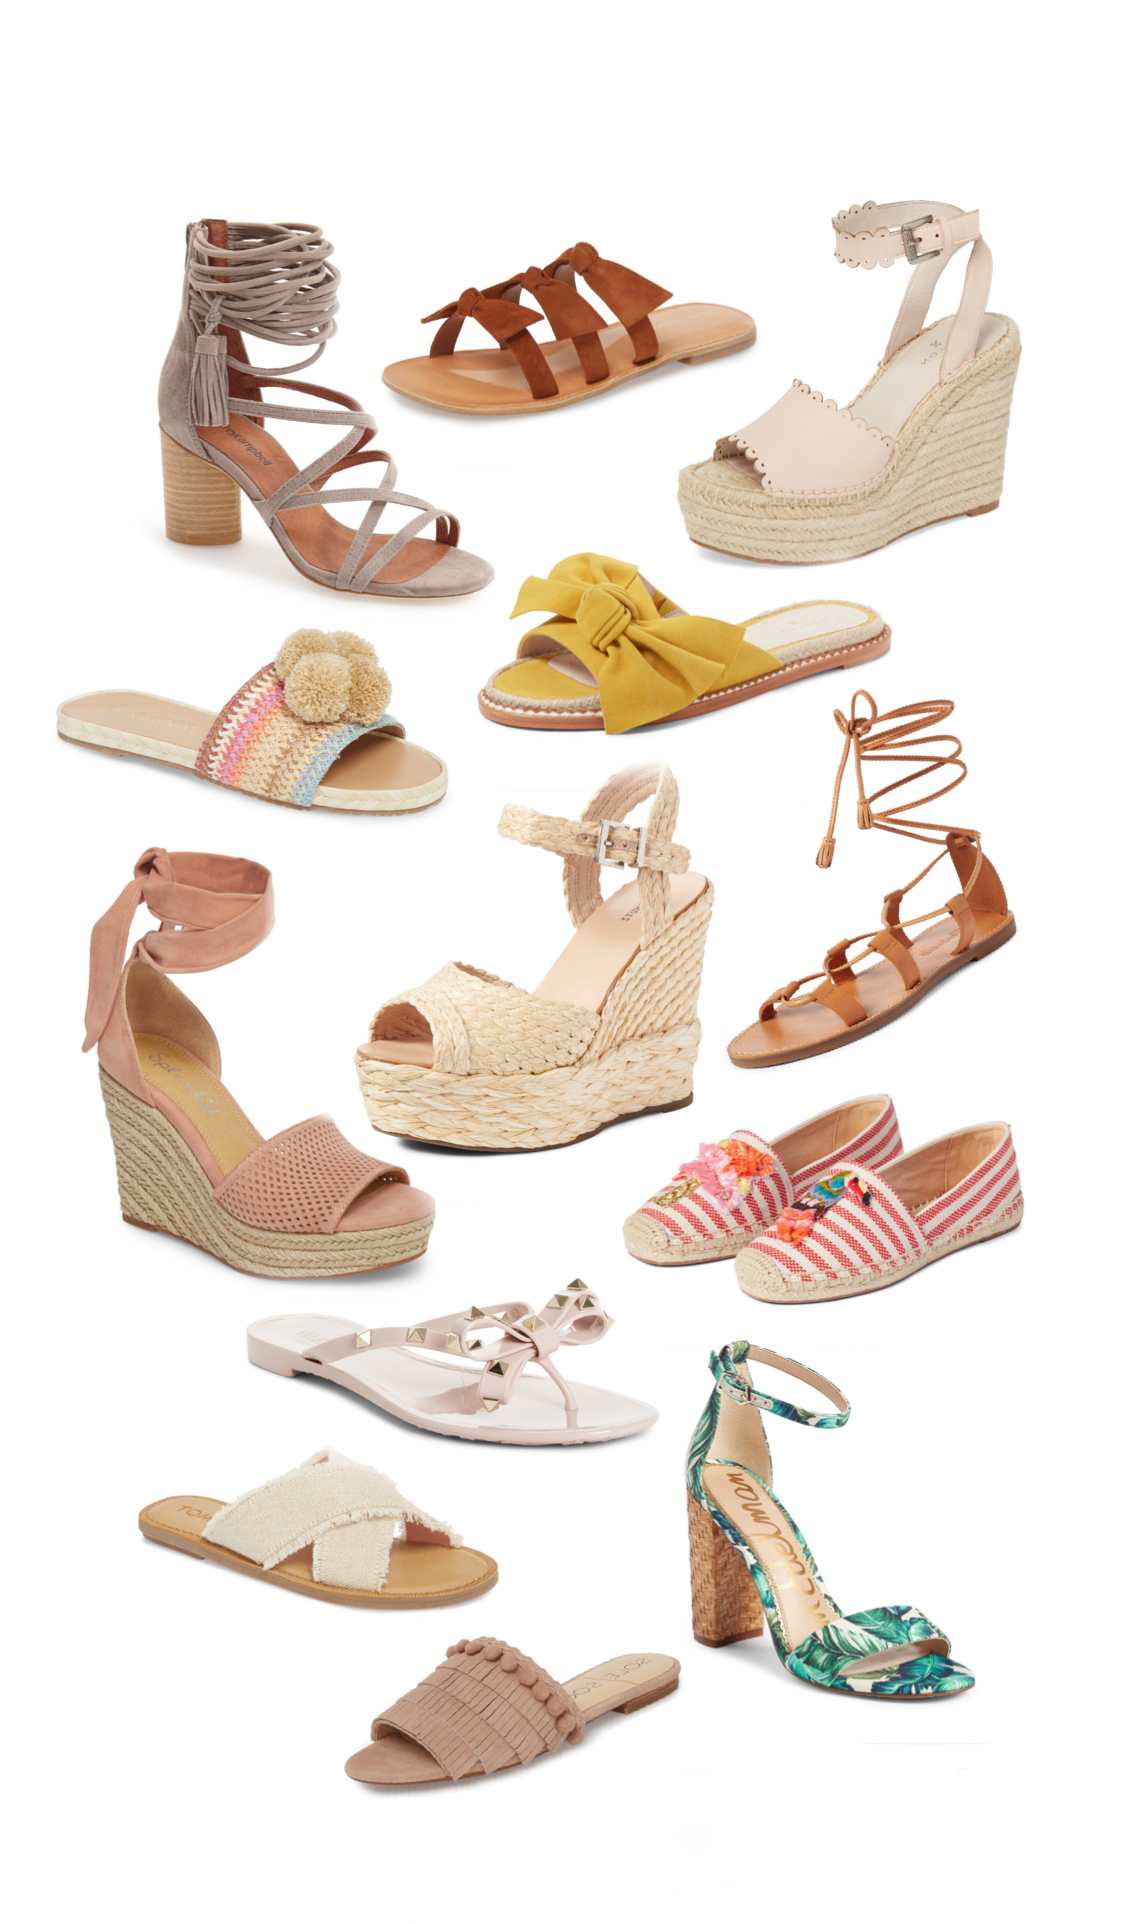 The Cutest Sandals for Summer - McKenna Bleu